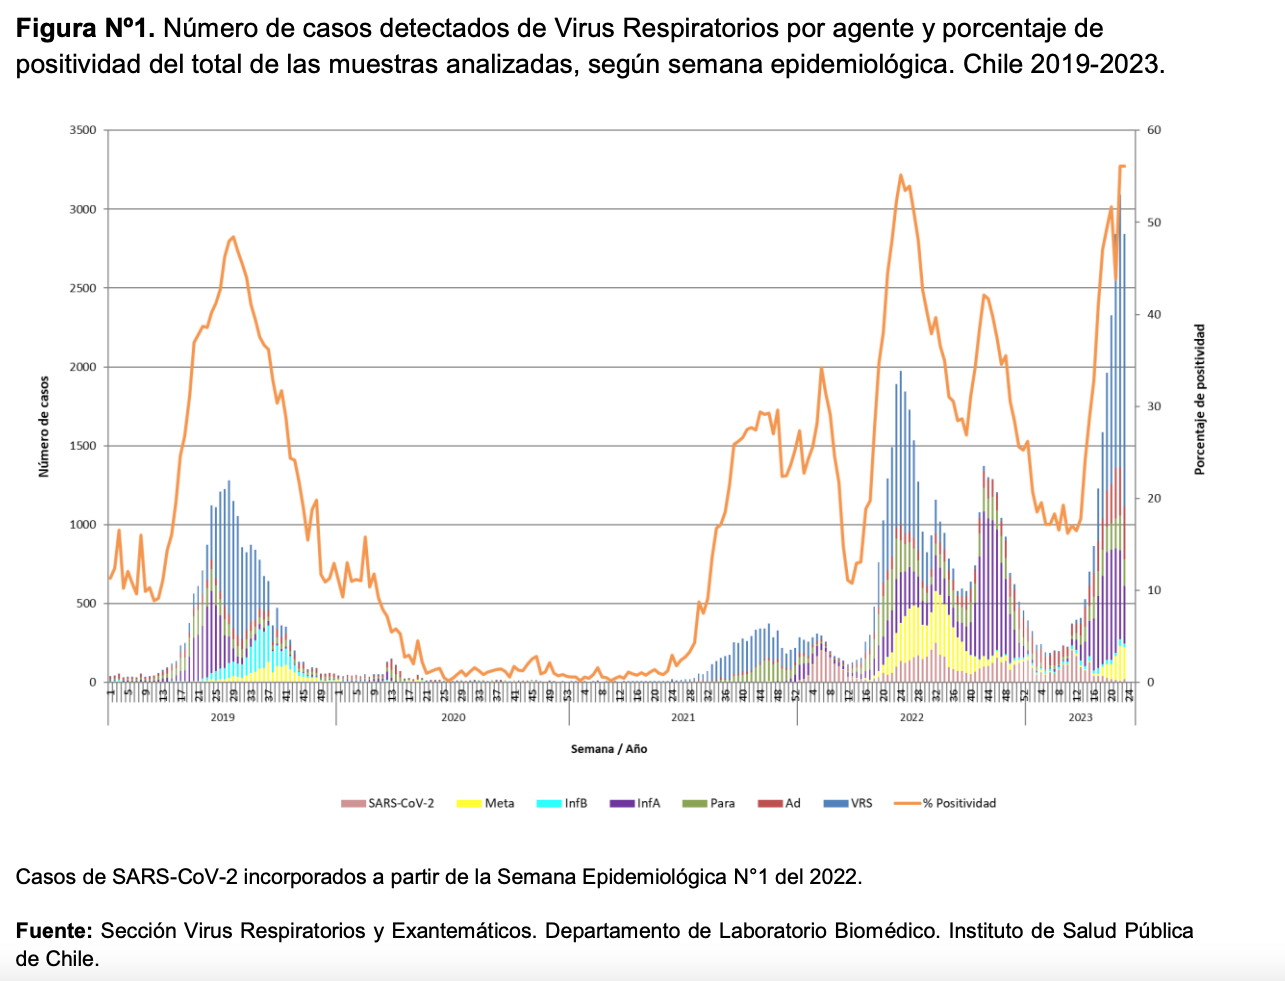 Casos detectados de virus respiratorios. Gráfica del Instituto de Salud Pública